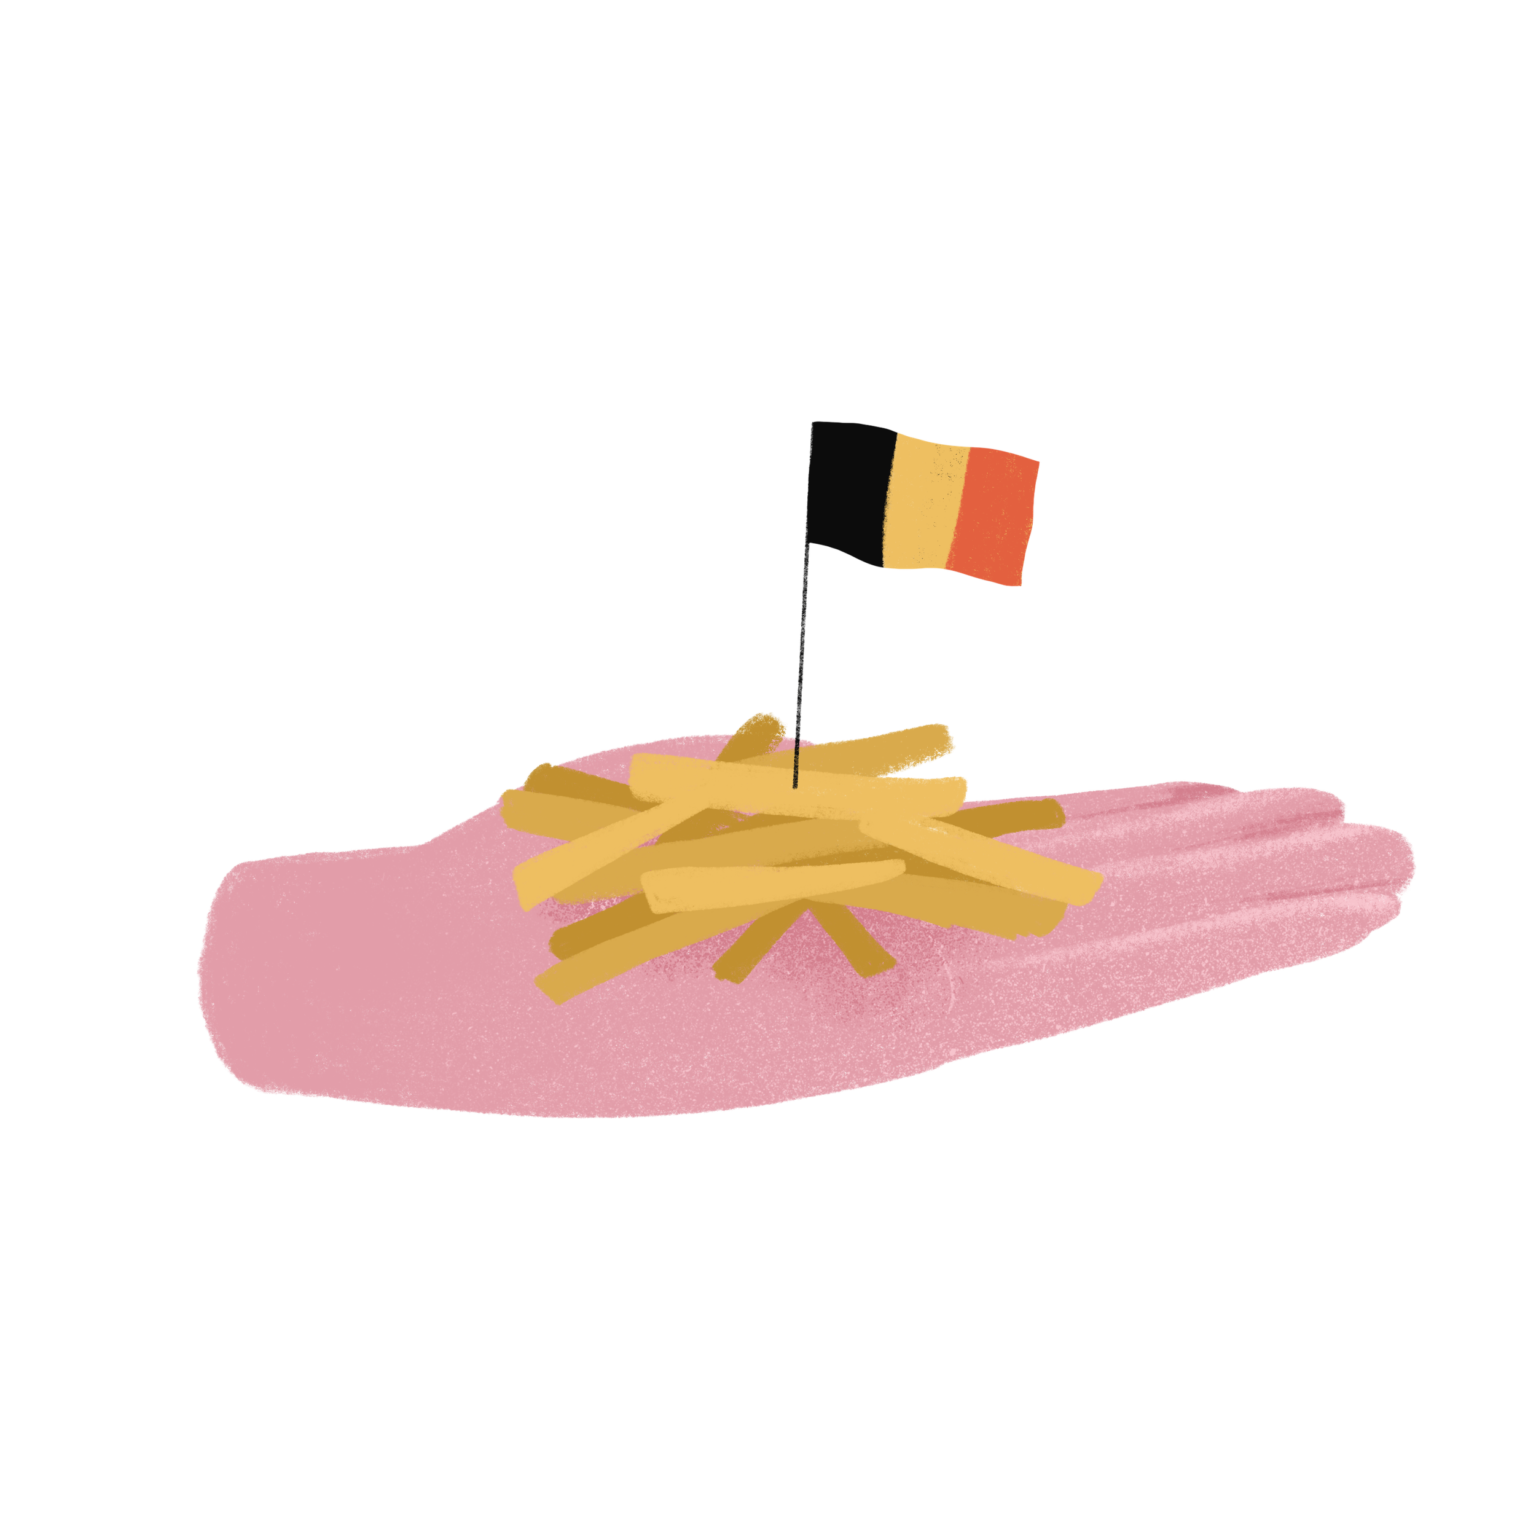 Patatas belgas